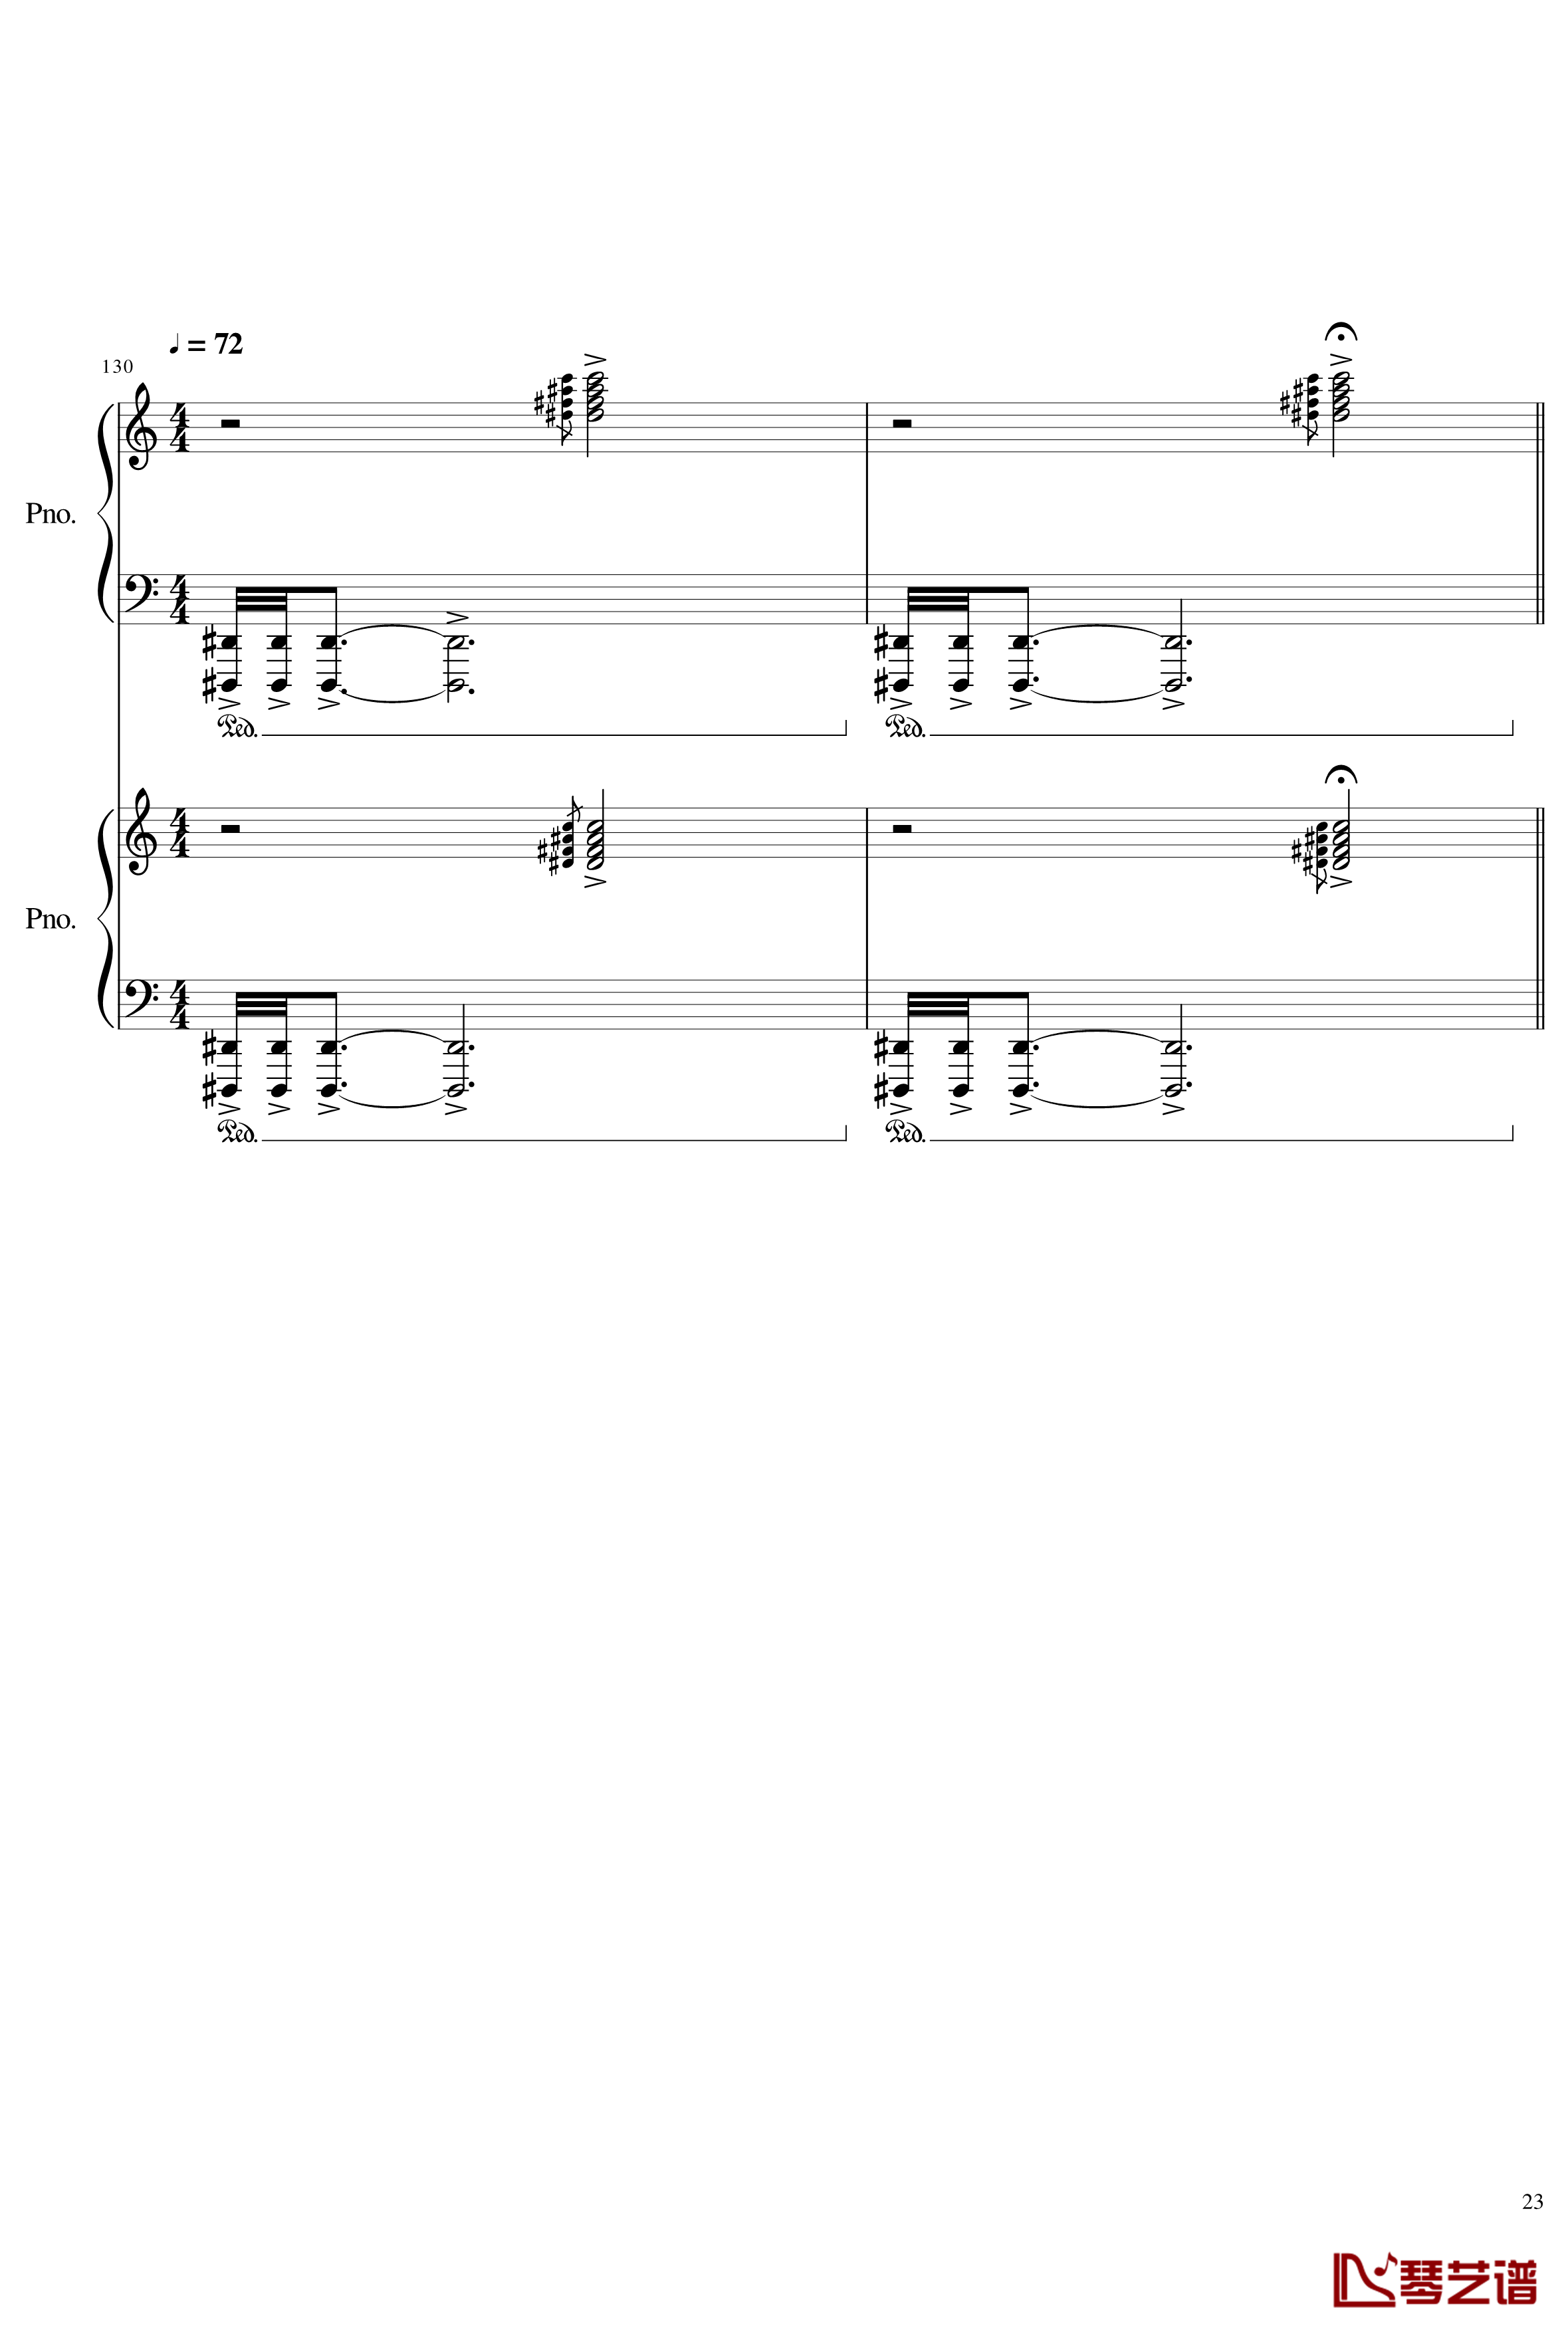 皇陵钢琴谱-yewwc23